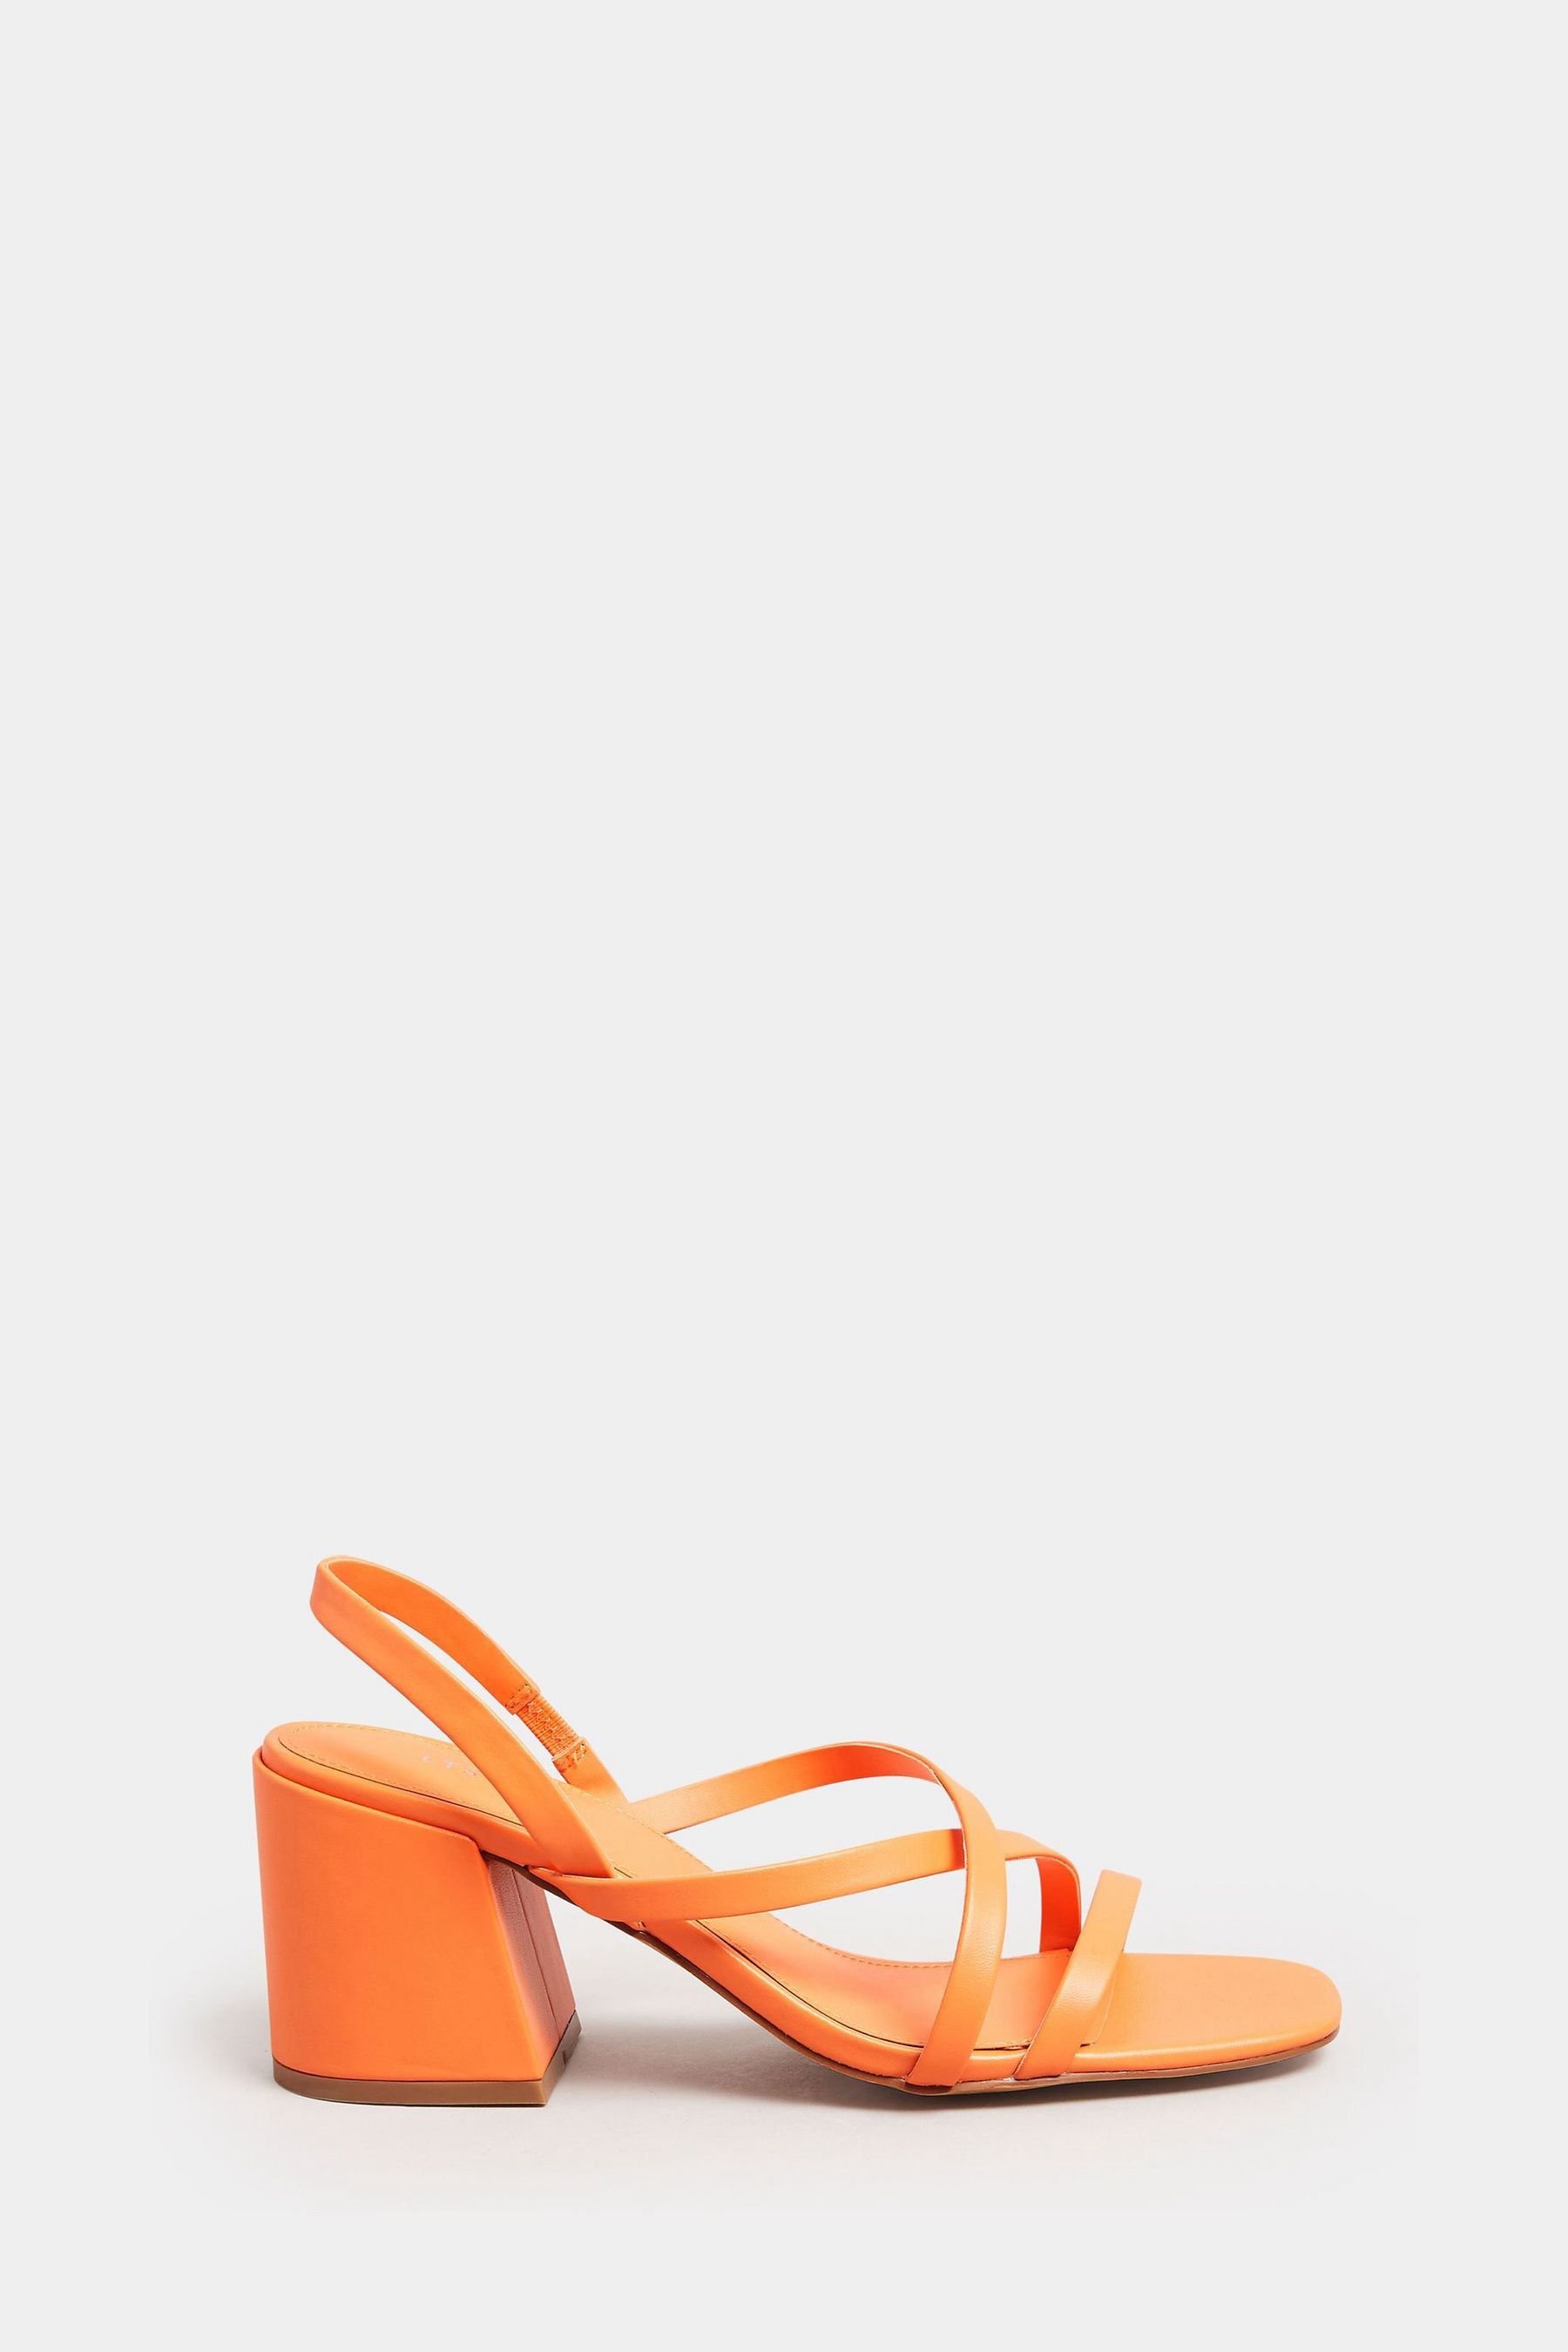 Полосатые босоножки на блочном каблуке Long Tall Sally, оранжевый